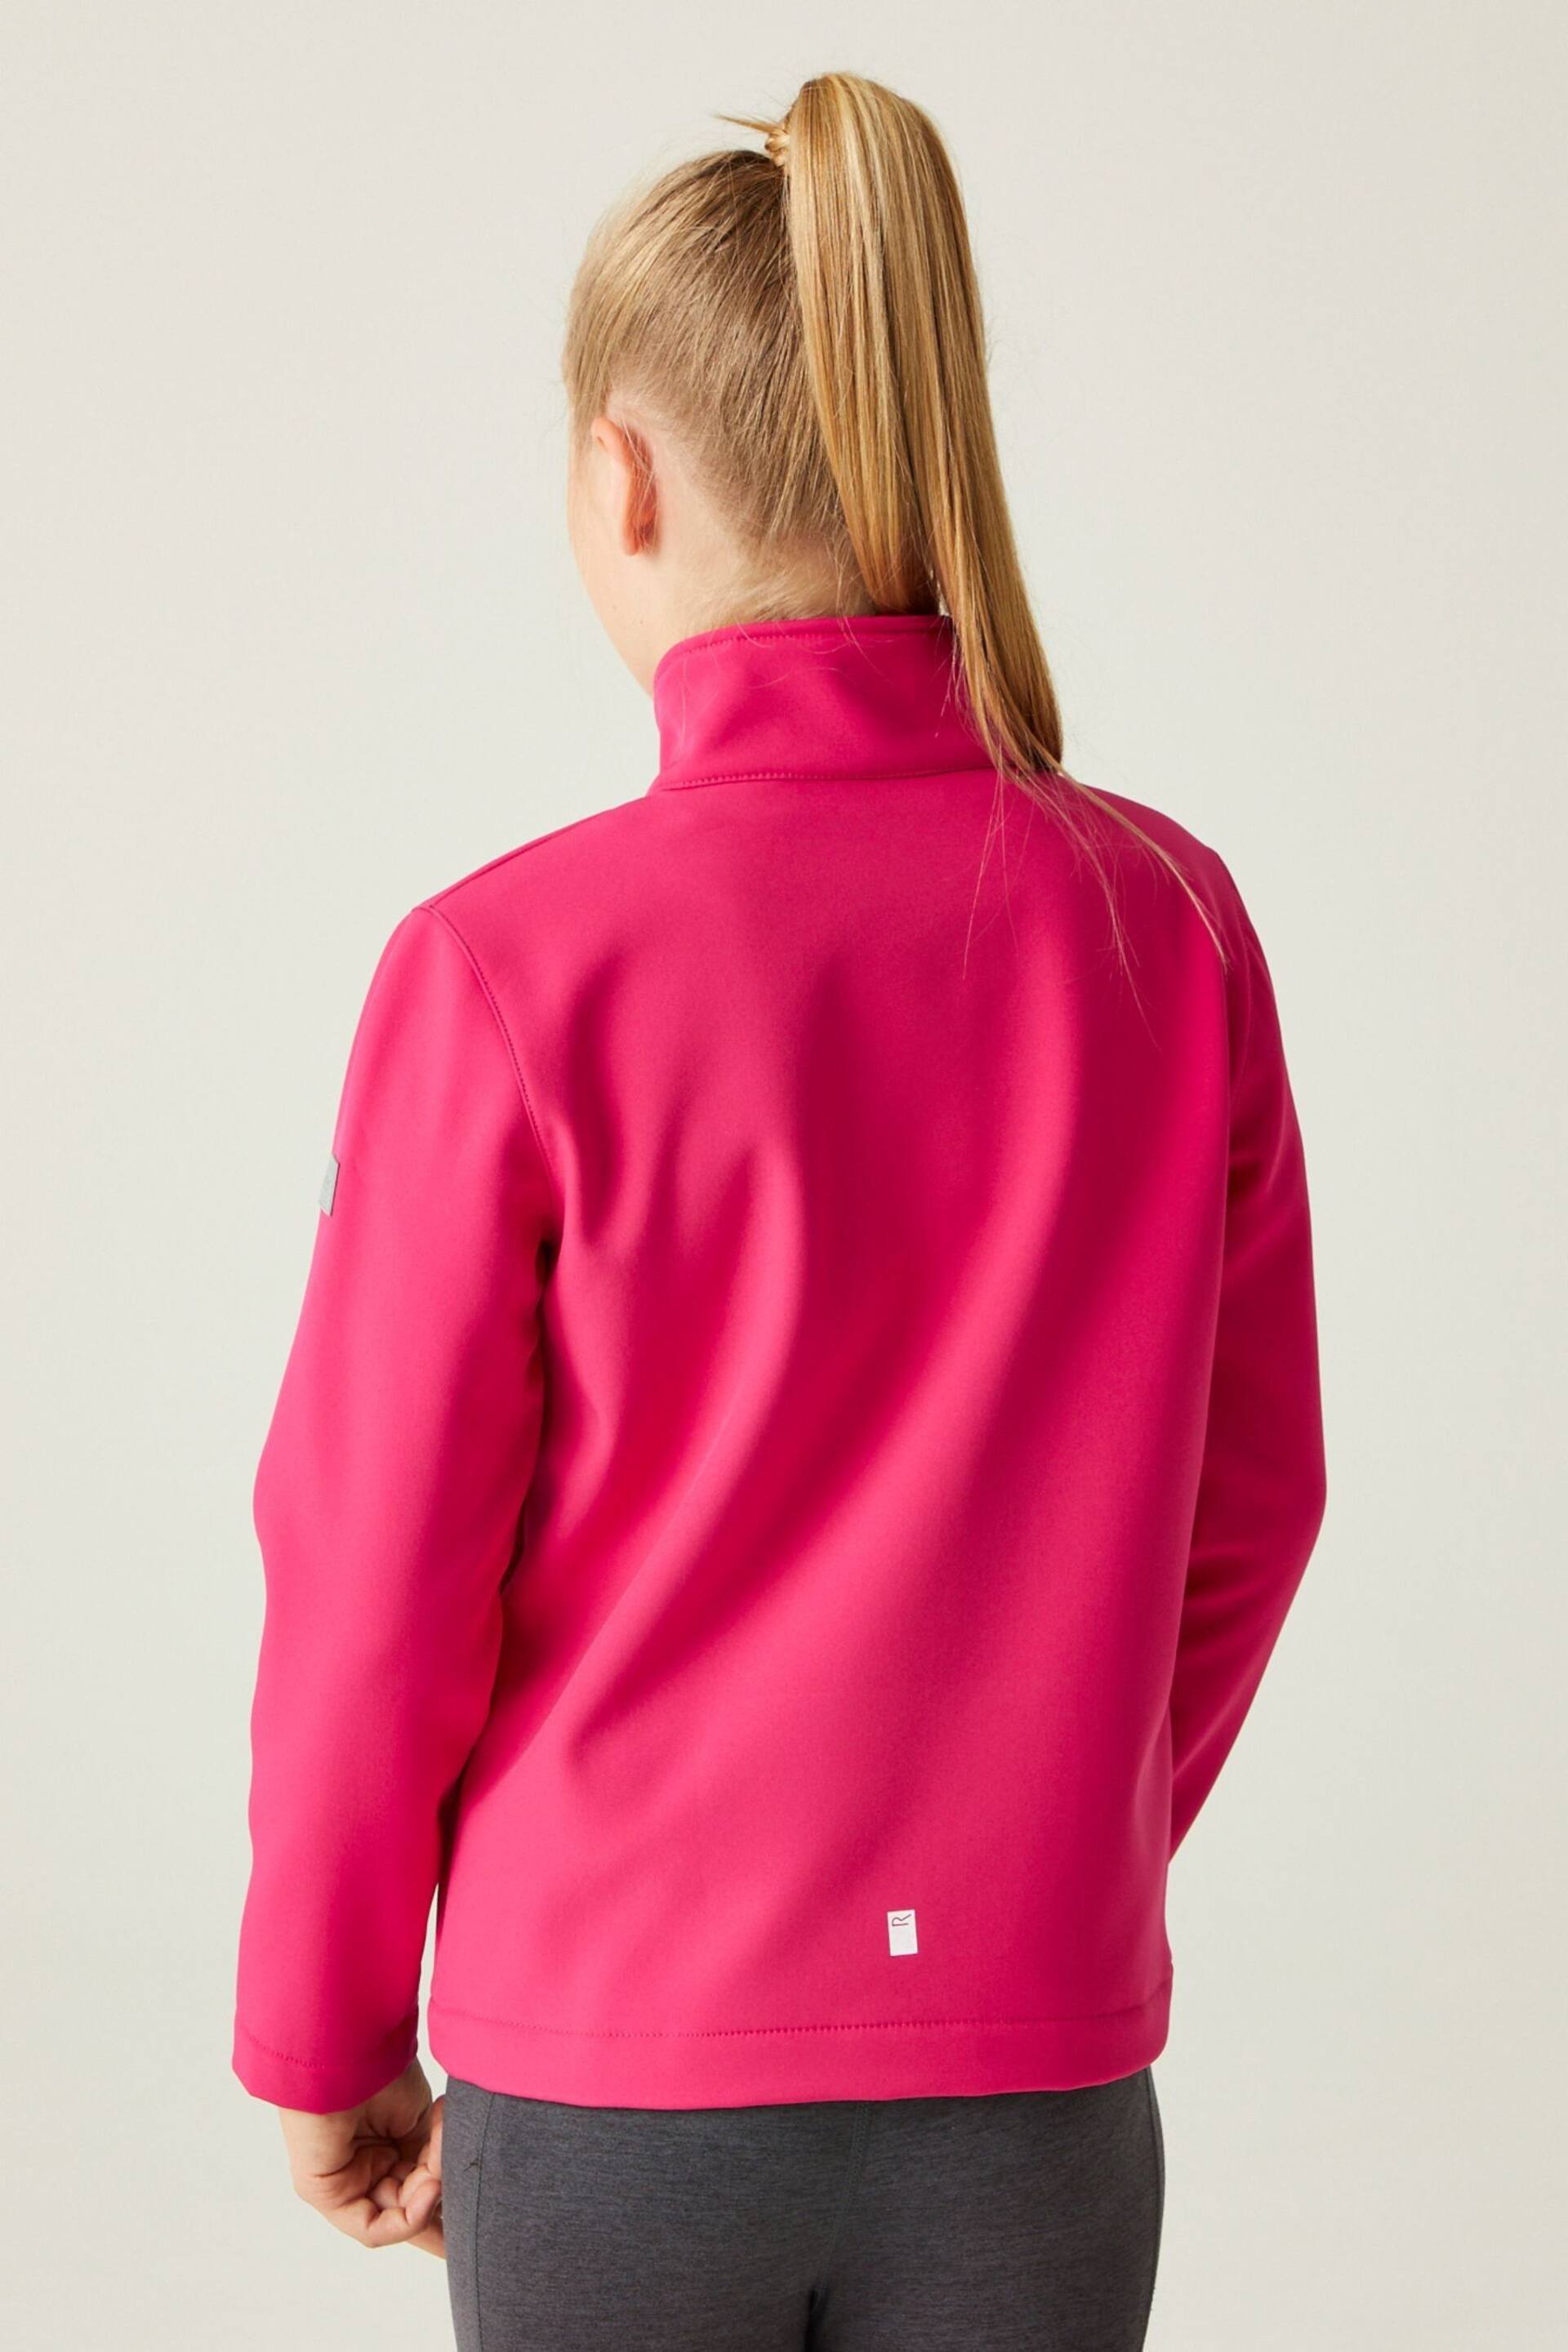 Regatta Pink Junior Cera Softshell Jacket - Image 3 of 7